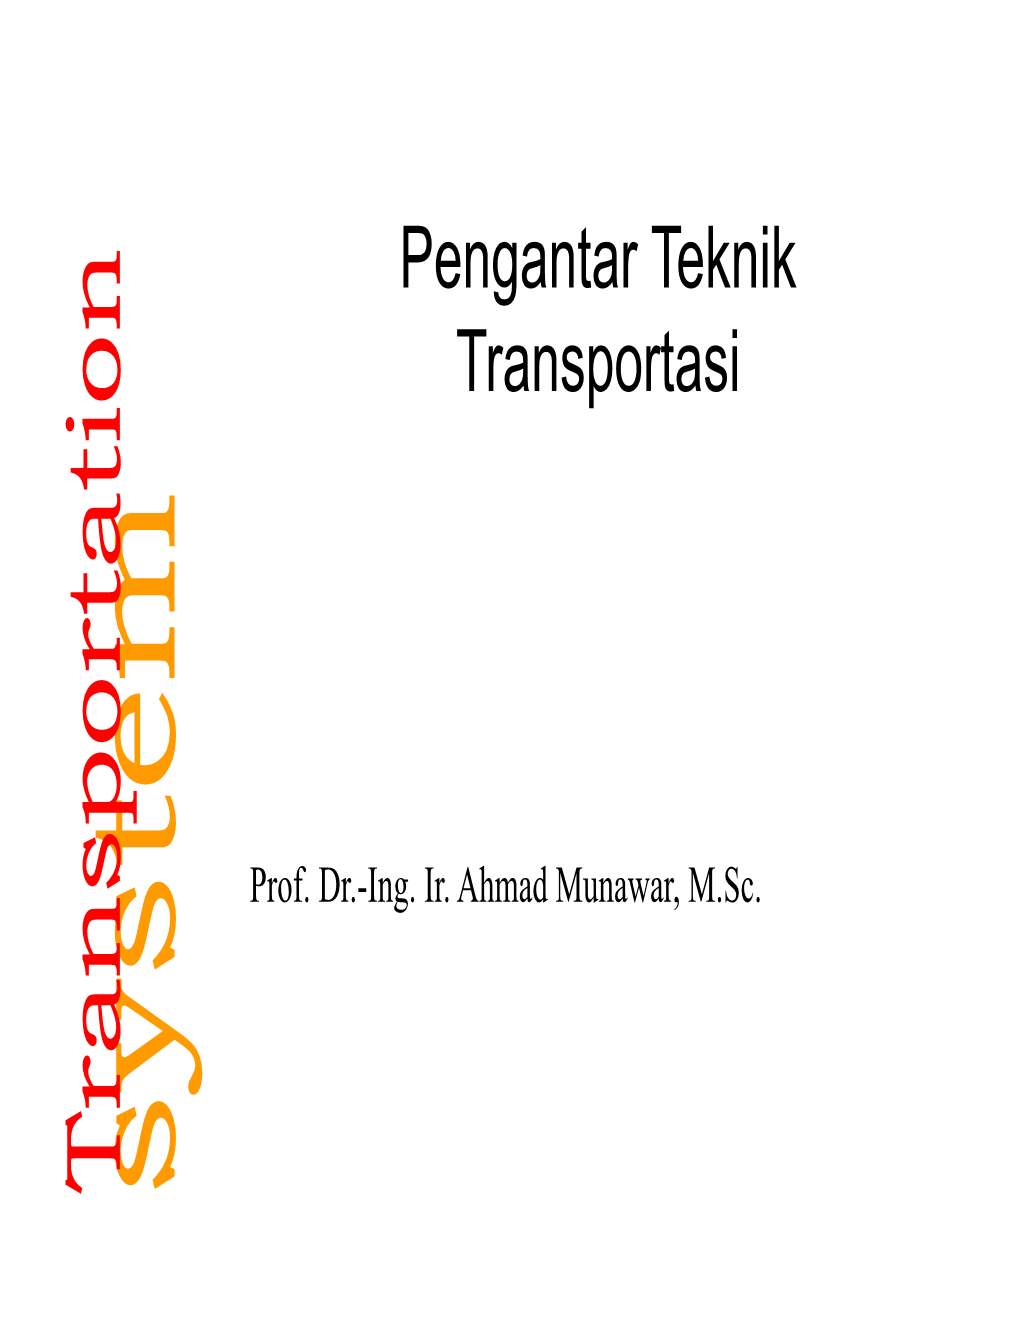 Transportation Prof